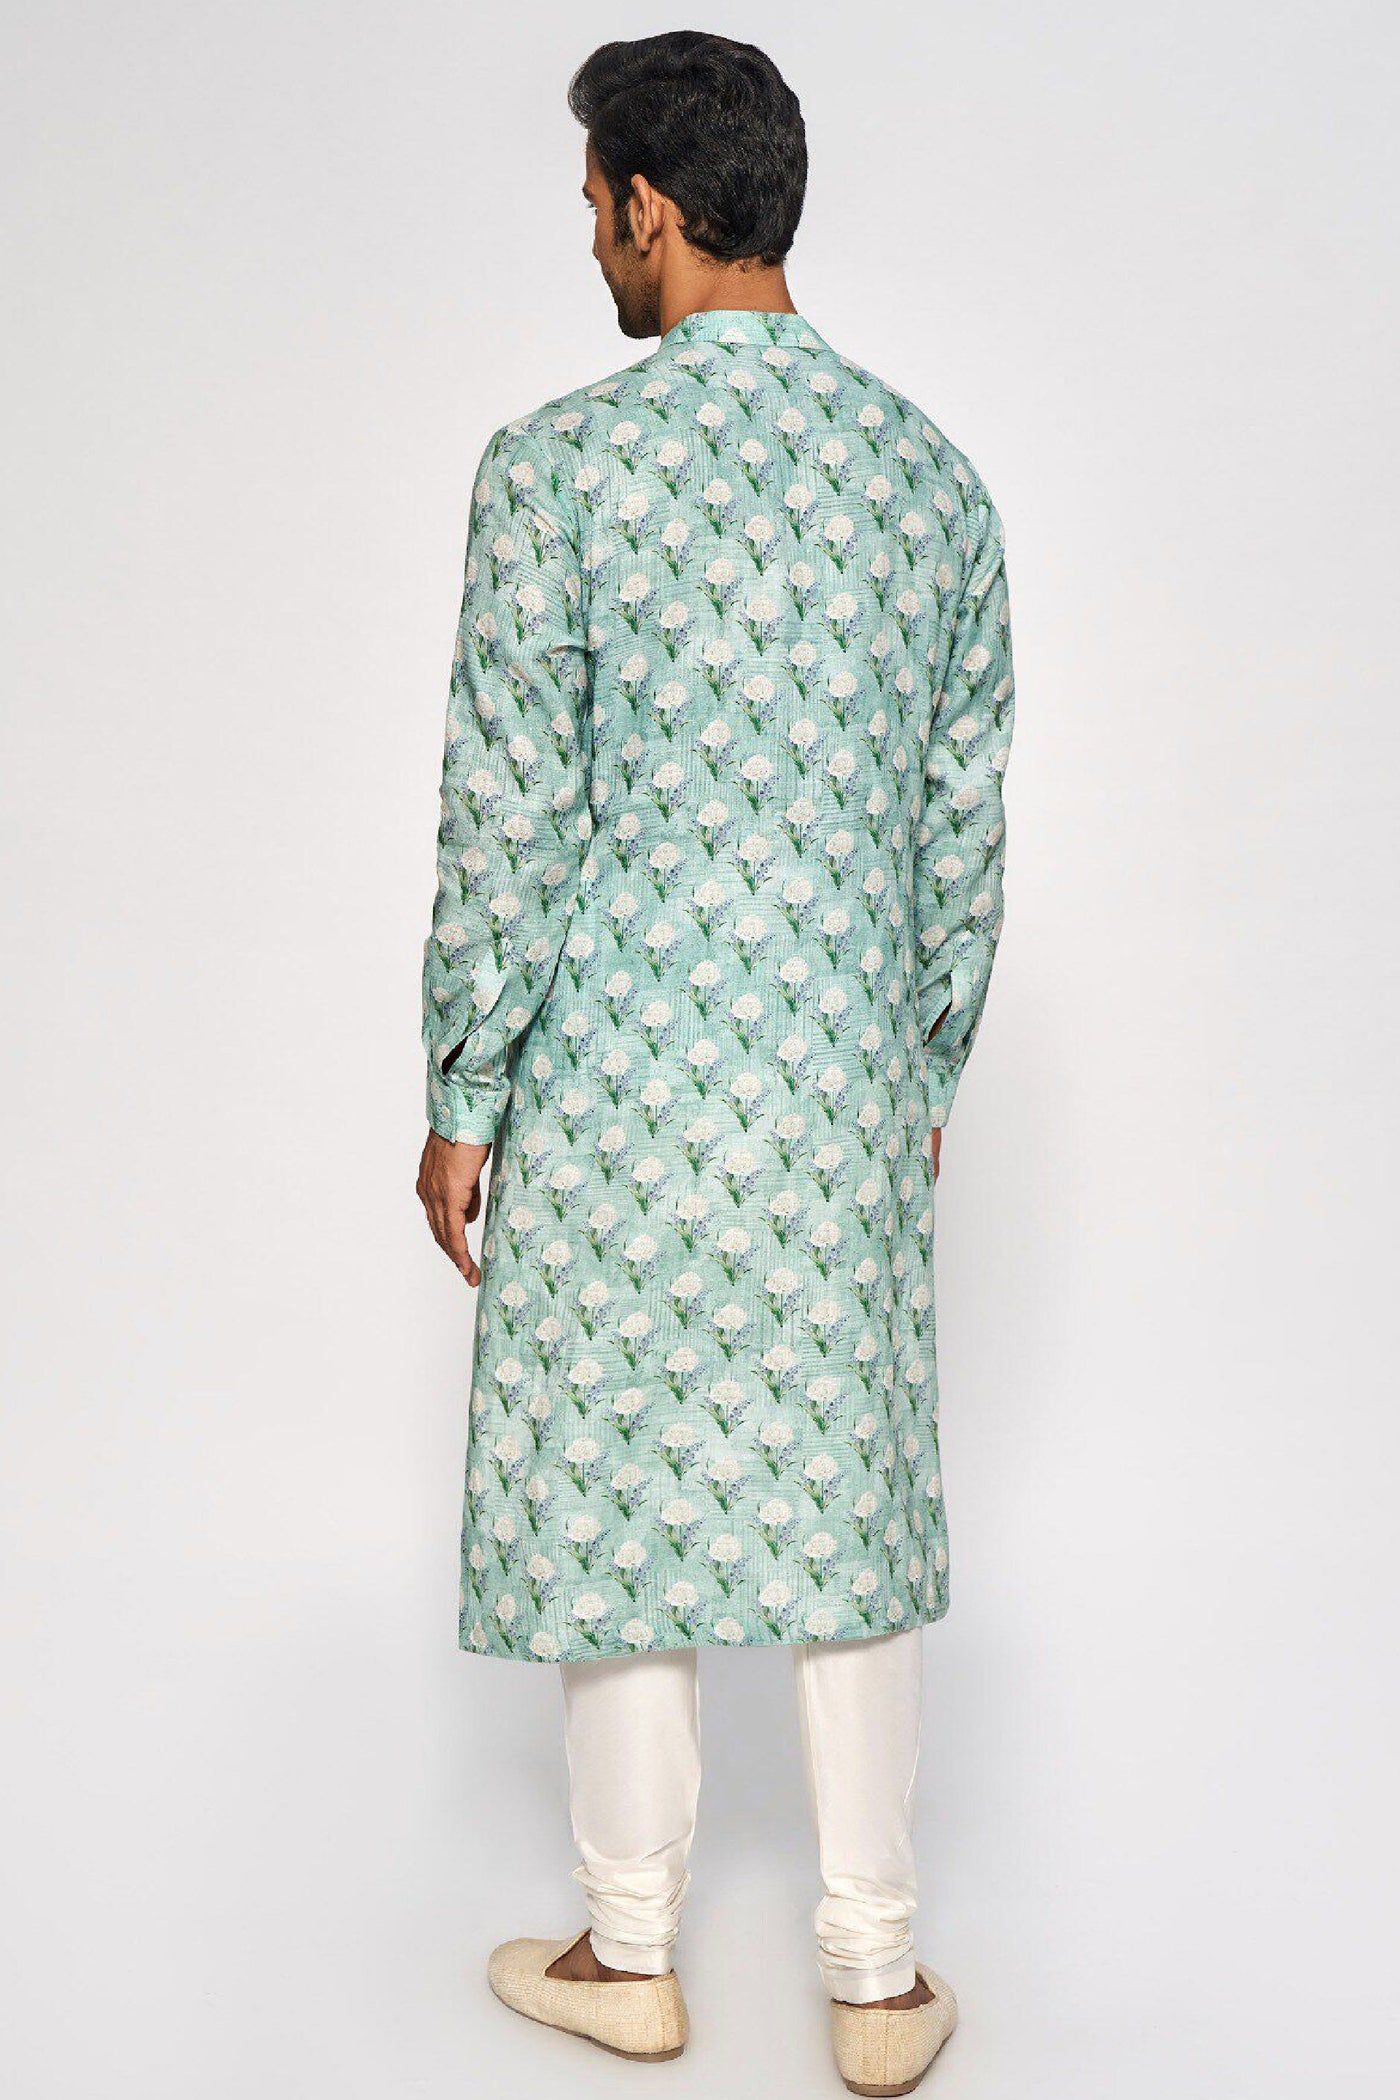 Anita Dongre Menswear Akarsh Kurta Sea Green Indian designer wear online shopping melange singapore